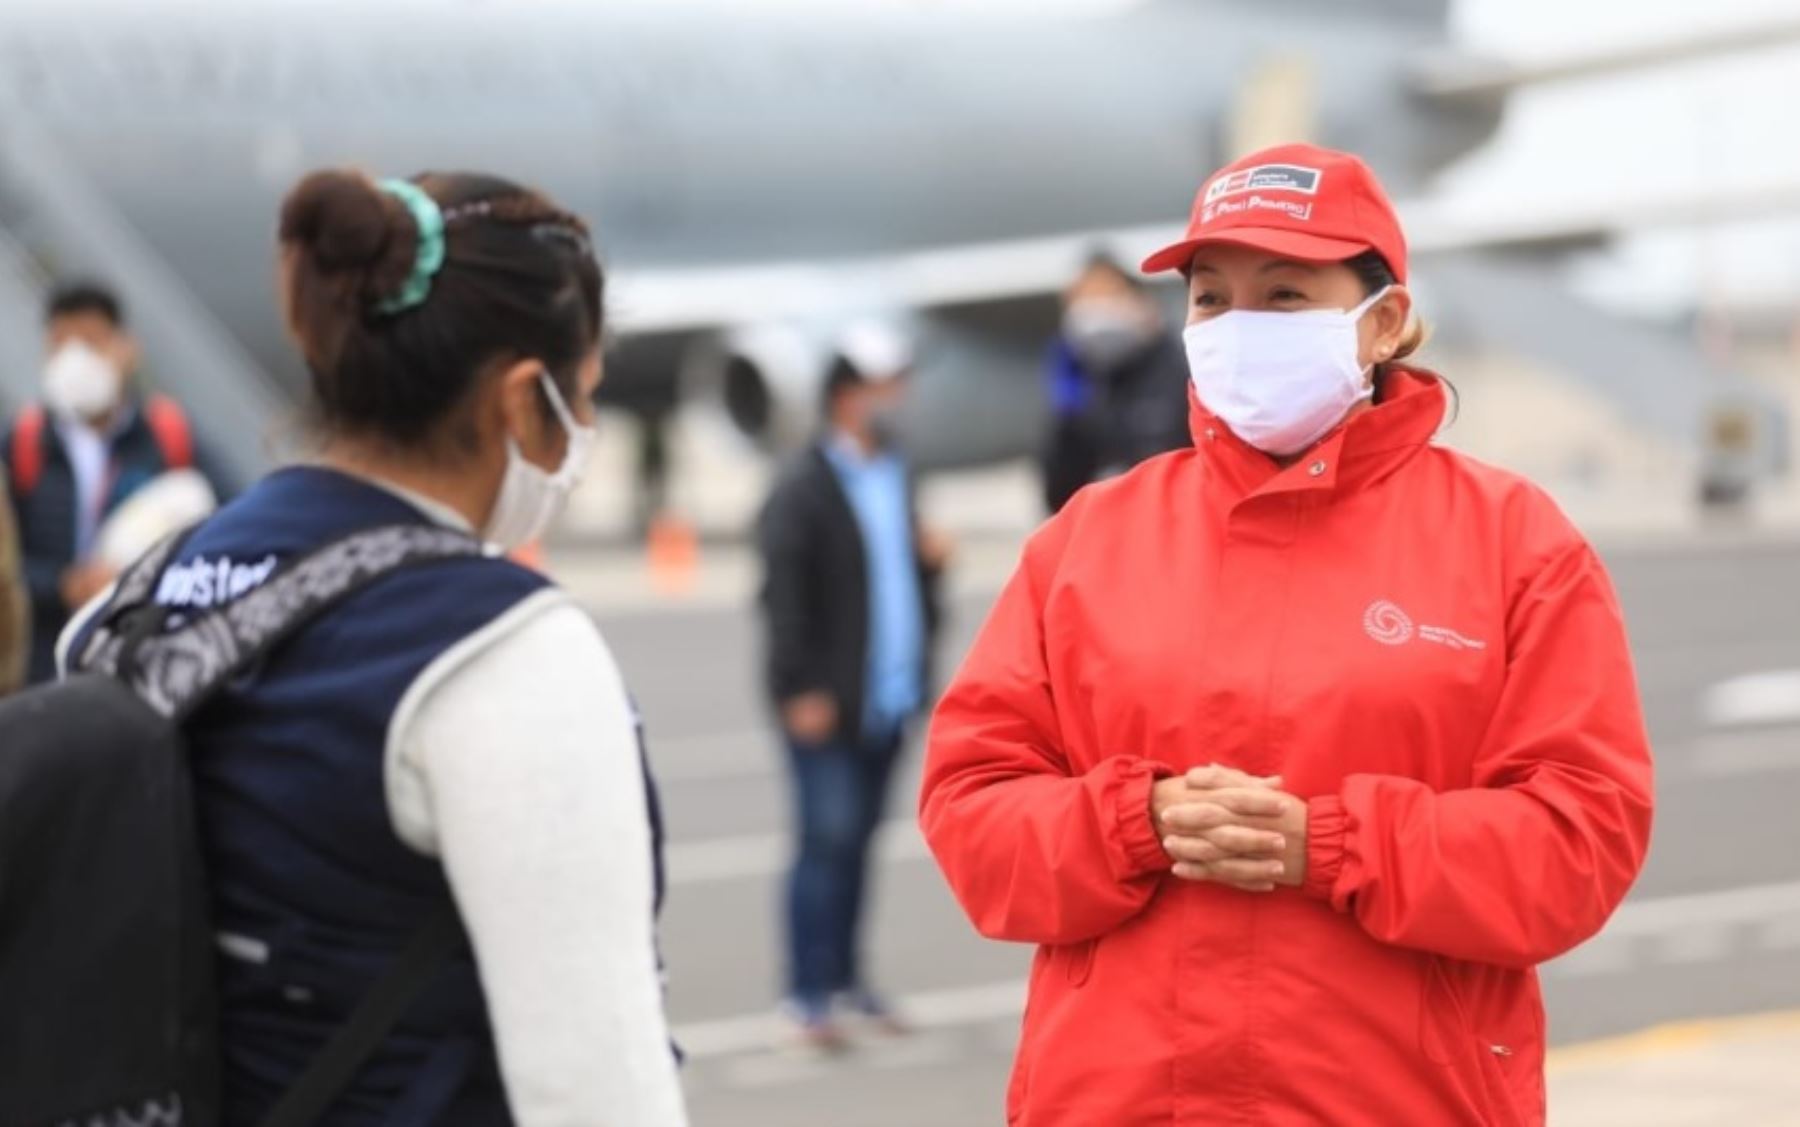 La ministra de la Producción, Rocío Barrios, trasladó hoy a la región Loreto 1.5 toneladas de material médico y 9,000 pruebas rápidas necesarias para reforzar la atención a la emergencia en Loreto, una de las más afectadas por la pandemia del covid-19 en el país.